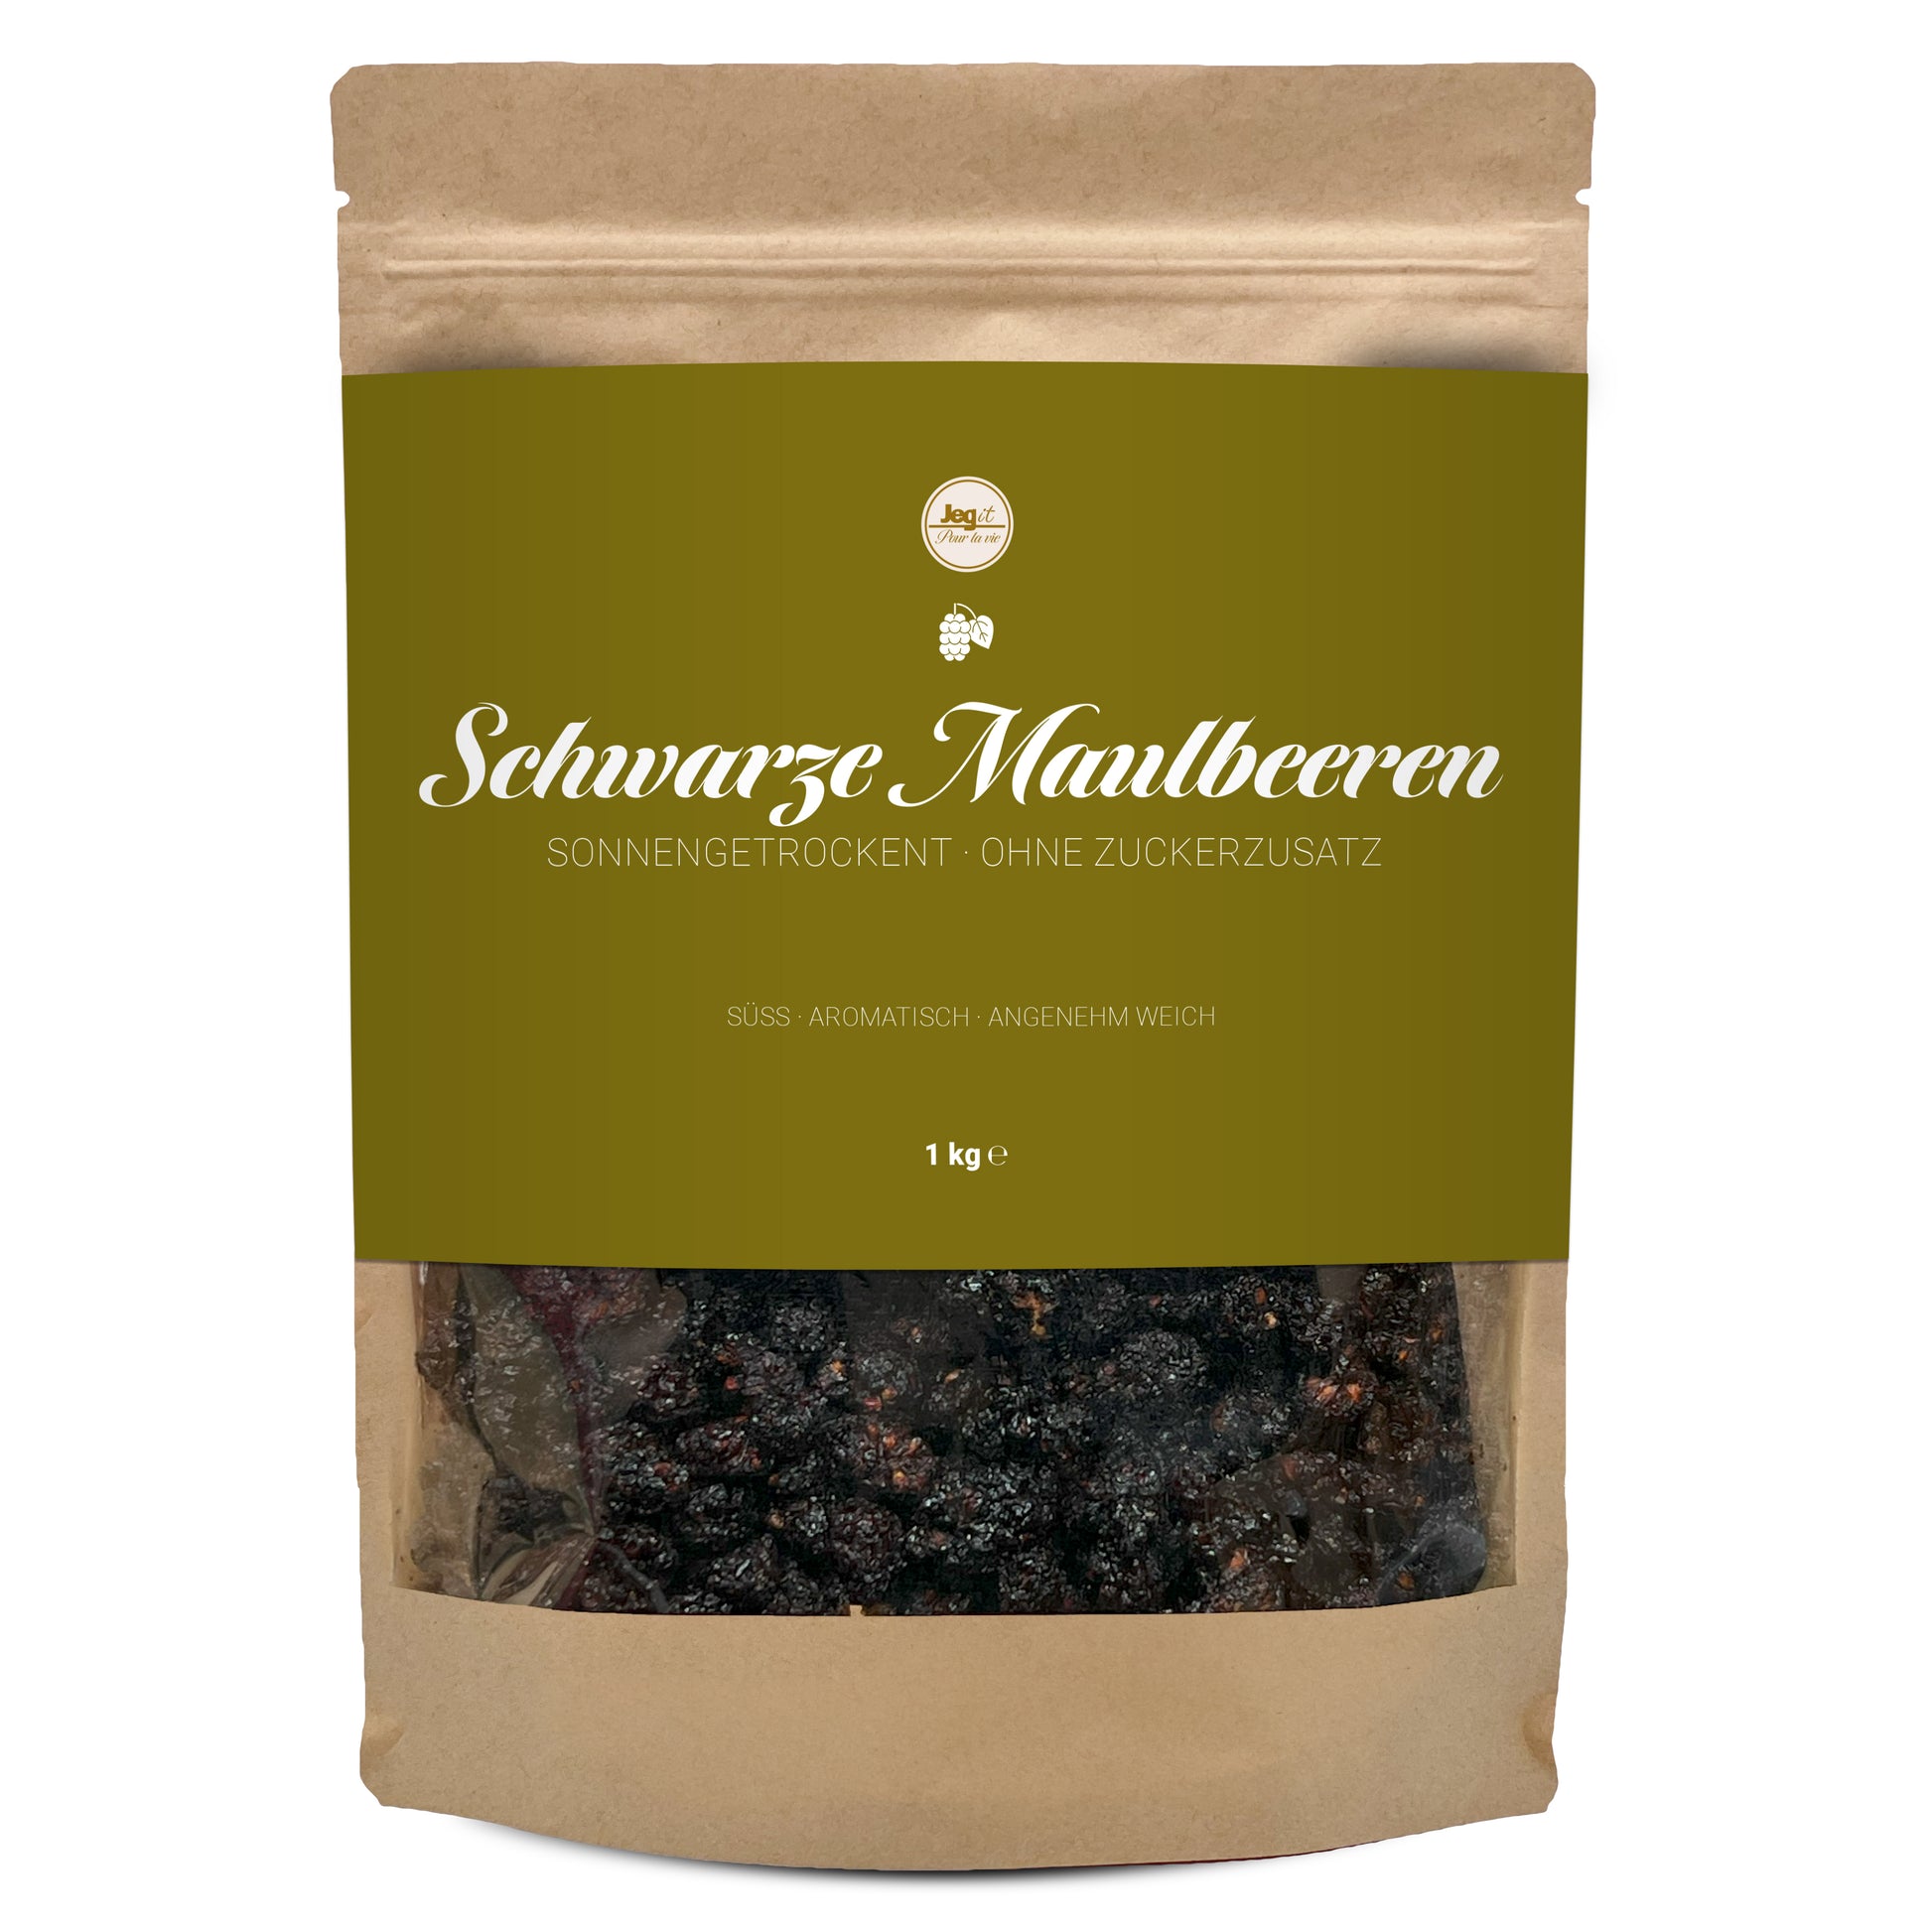 maulbeeren-schwarz-package